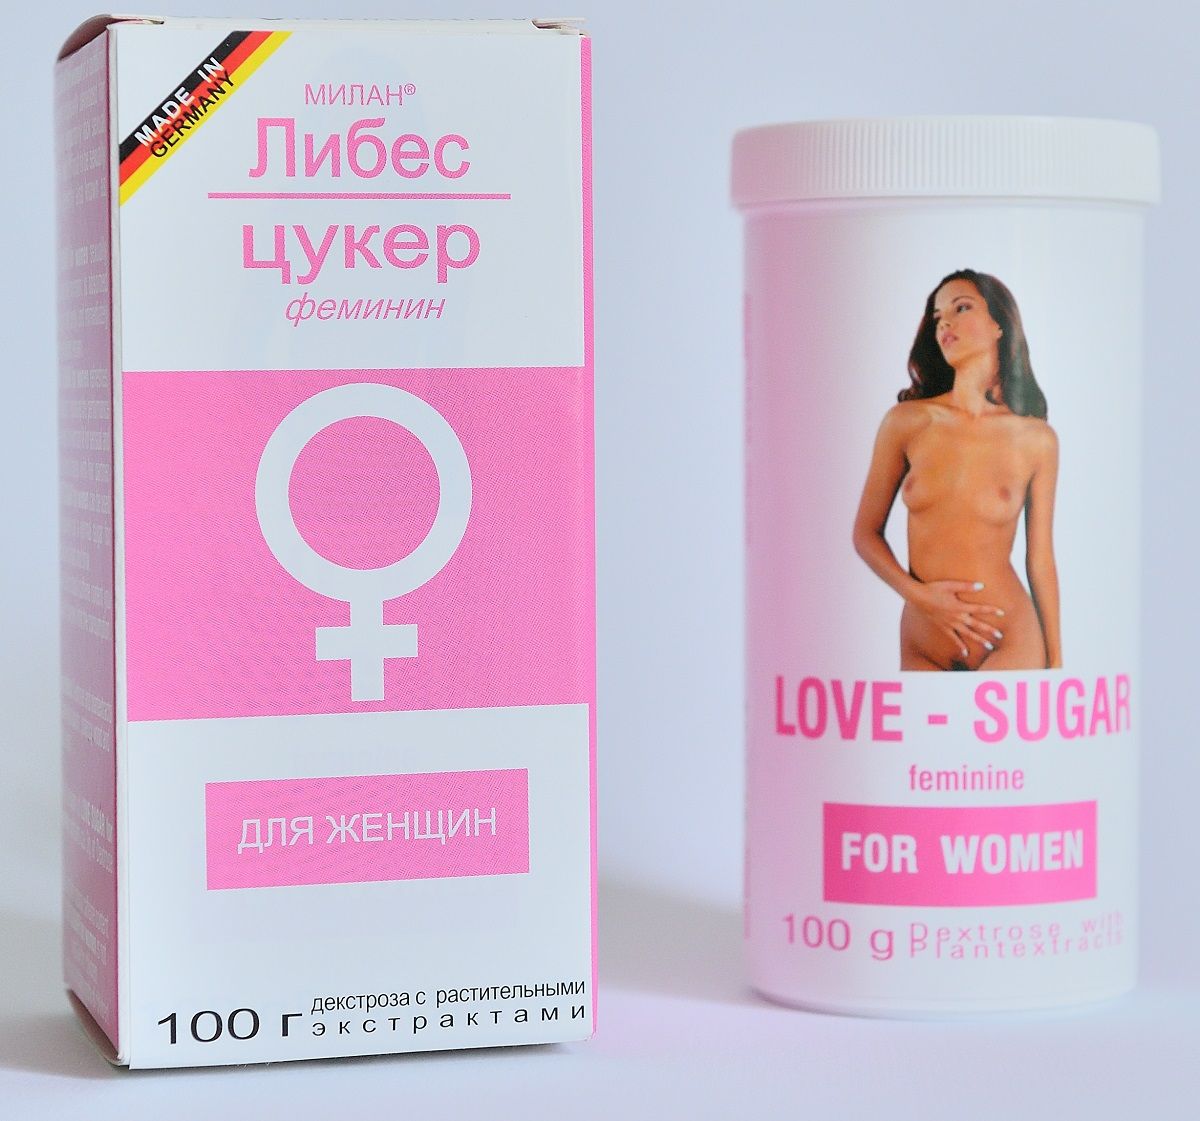     Liebes-Zucker-Feminin - 100 .